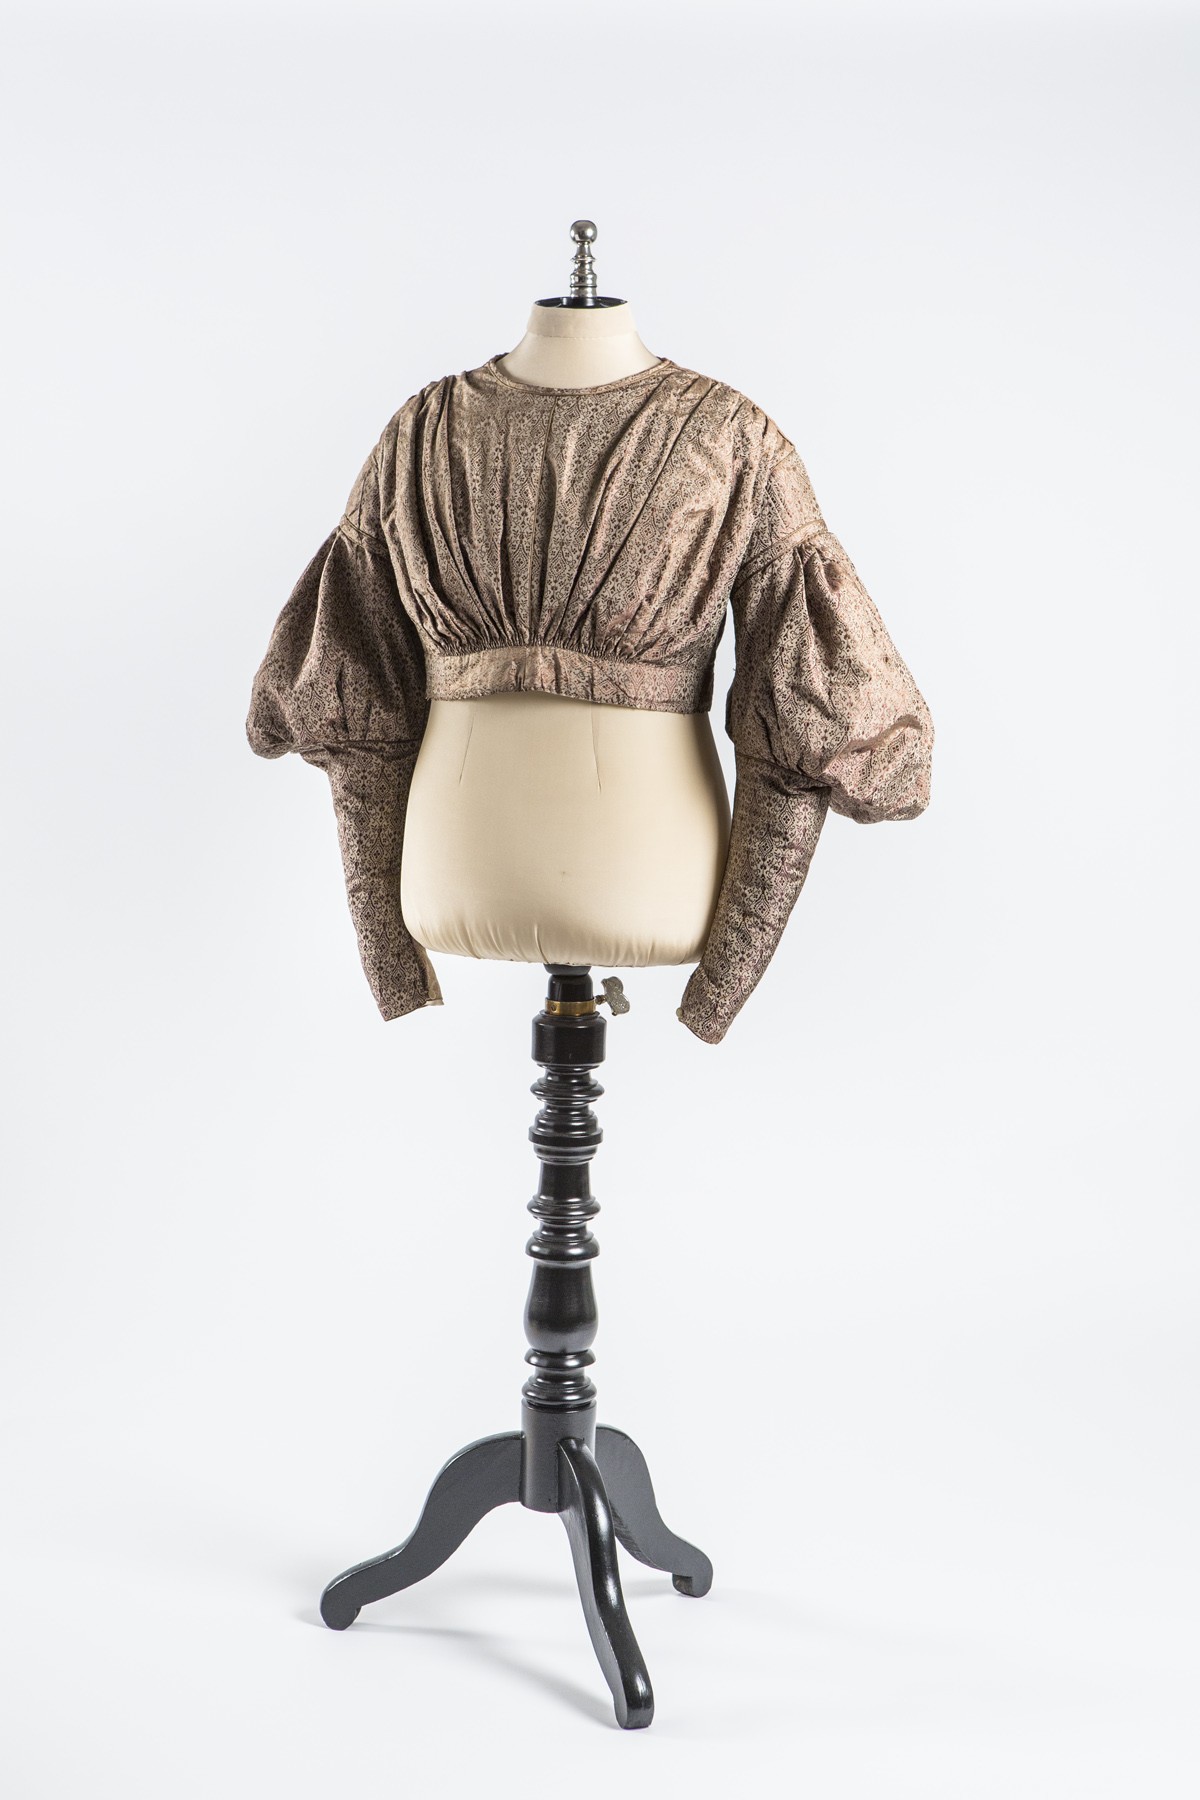 Weinrrote Bluse von Barbara Jordan (Historisches Museum der Pfalz, Speyer CC BY)